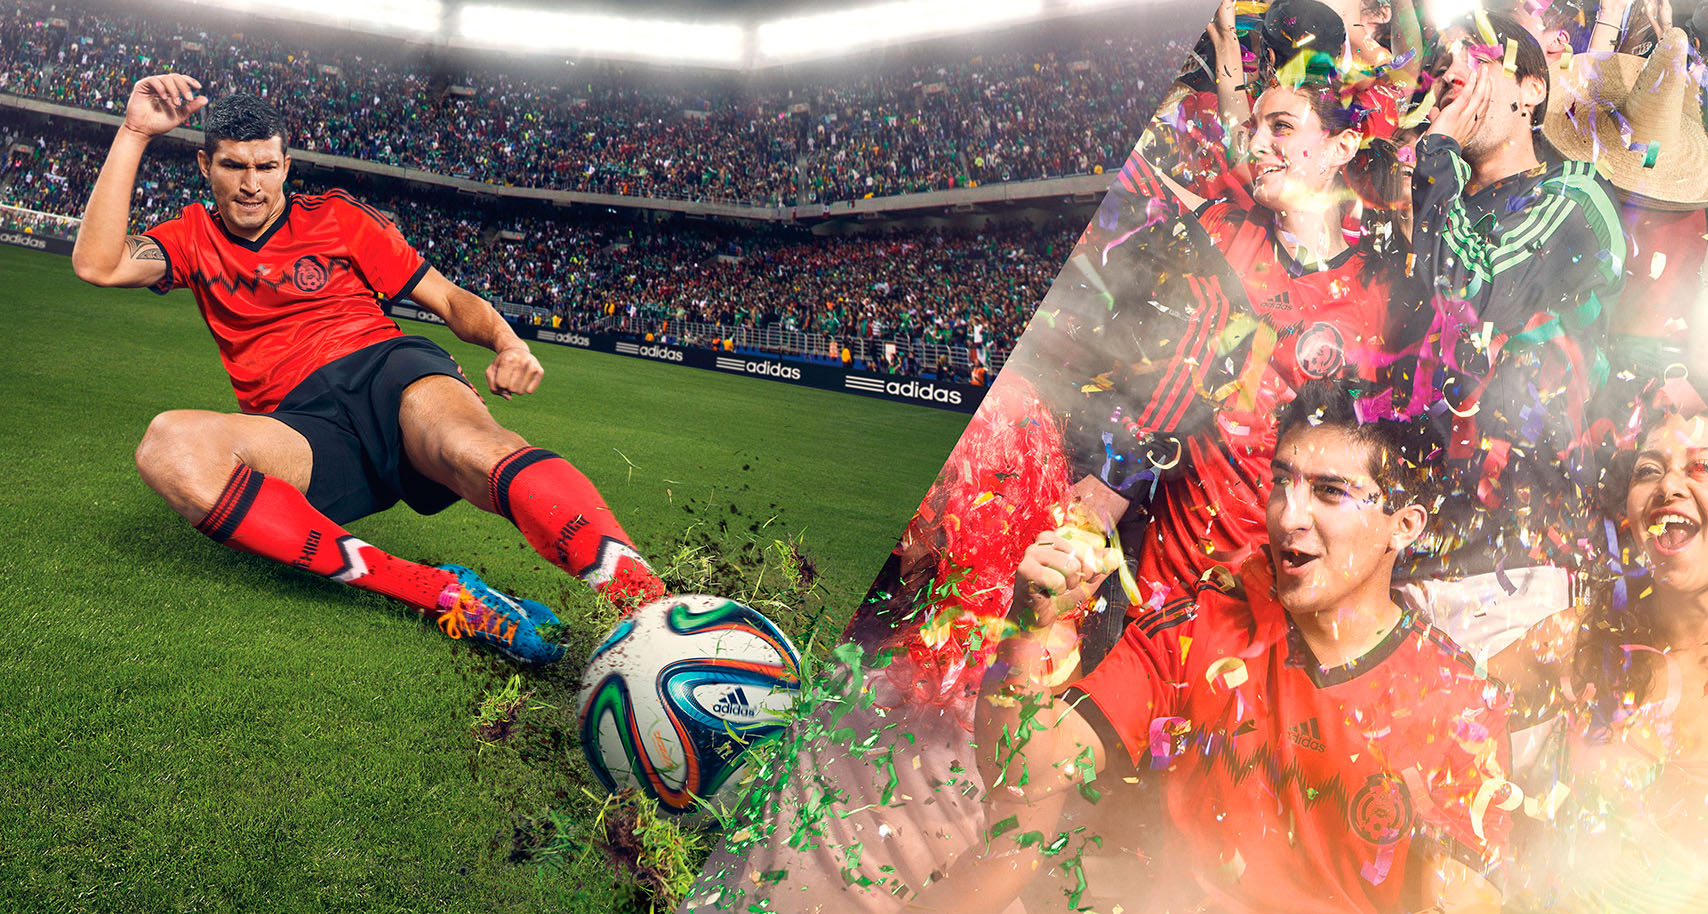 Adidas Soccer World Cup Team Mexico By Freddy Fabris Visogler